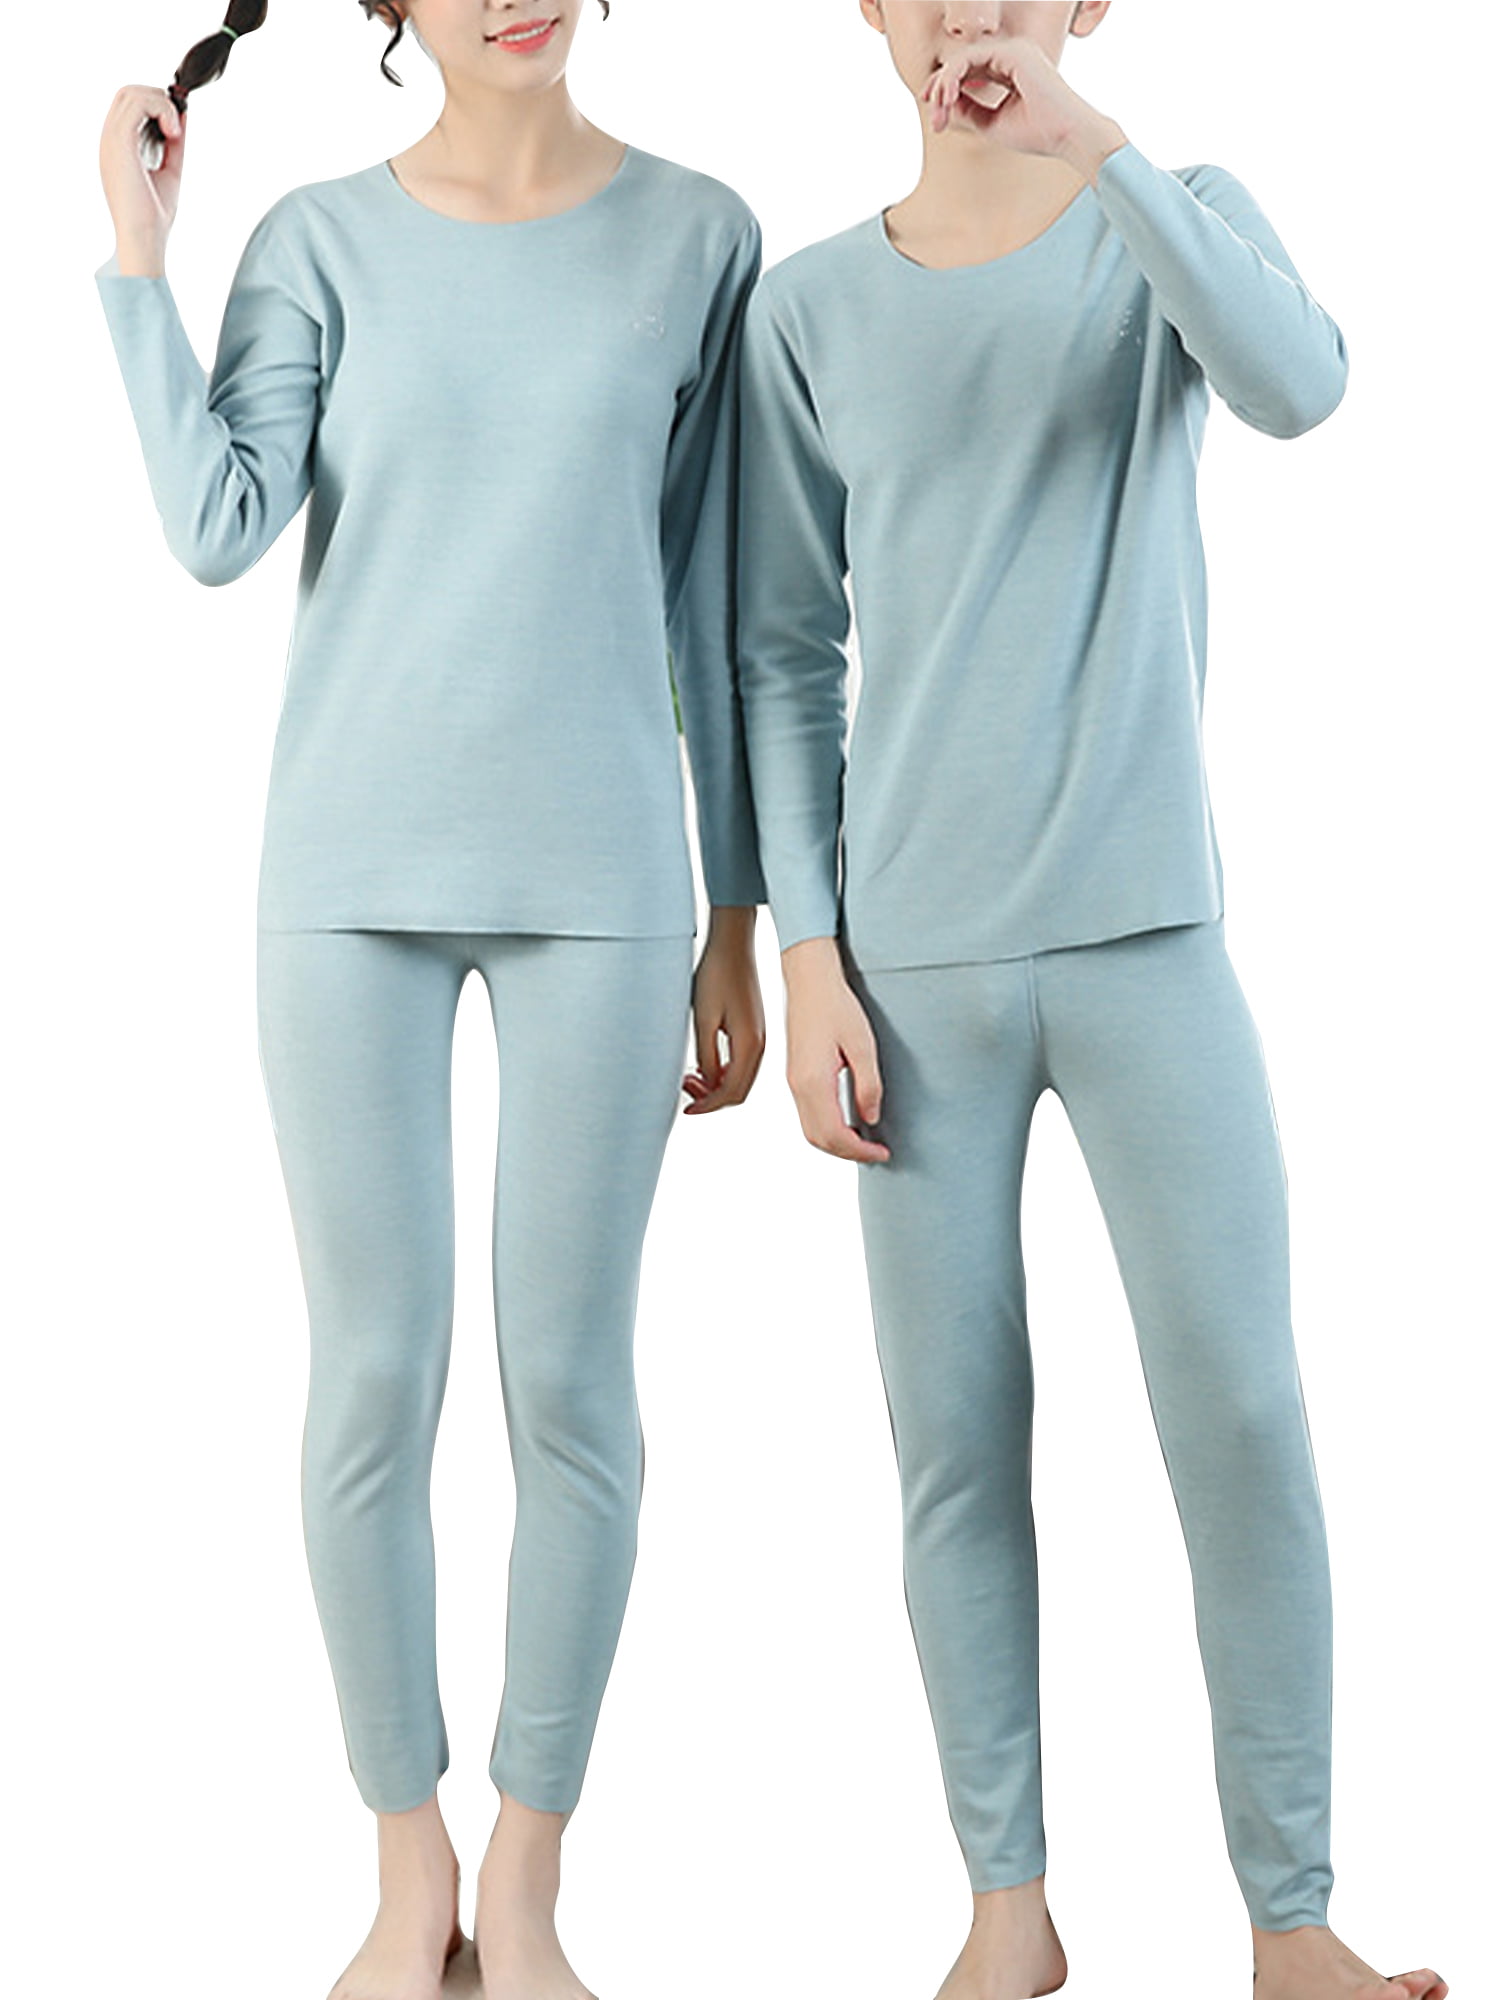 Niuer Men's Soft Thermal Onesie Pajamas